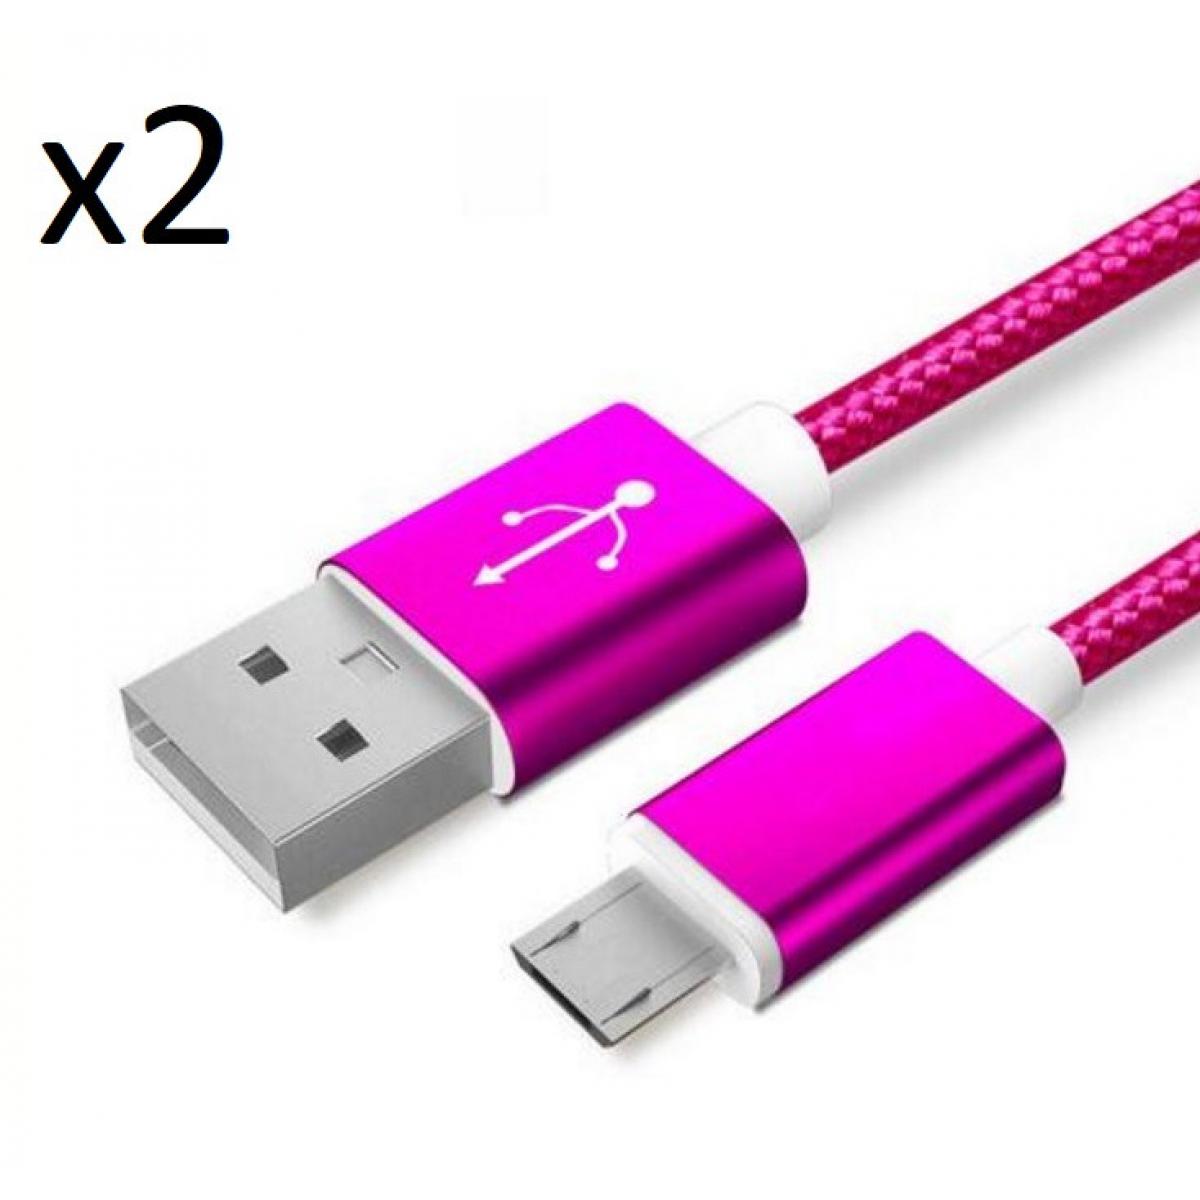 Shot - Pack de 2 Cables Metal Nylon Micro USB pour XIAOMI Redmi 7 Smartphone Android Chargeur (ROSE BONBON) - Chargeur secteur téléphone